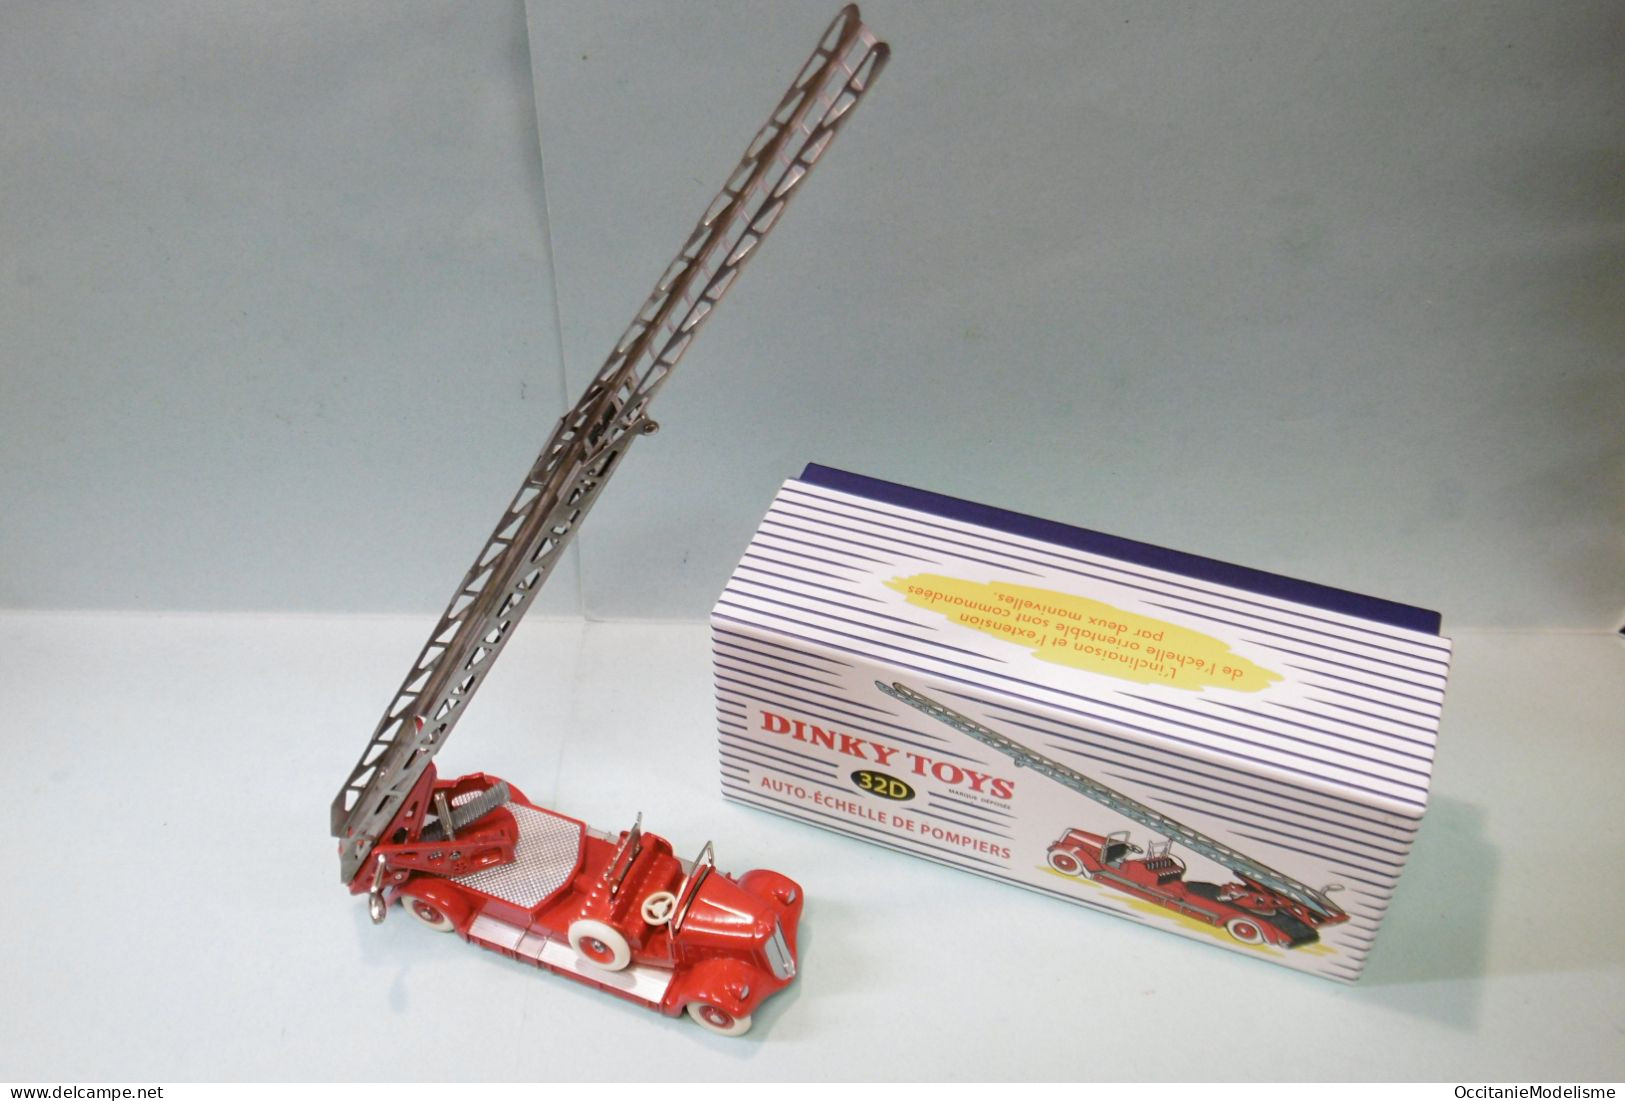 Dinky Toys / Atlas - DELAHAYE Auto-Echelle de Pompiers réf. 32D Neuf NBO 1/43